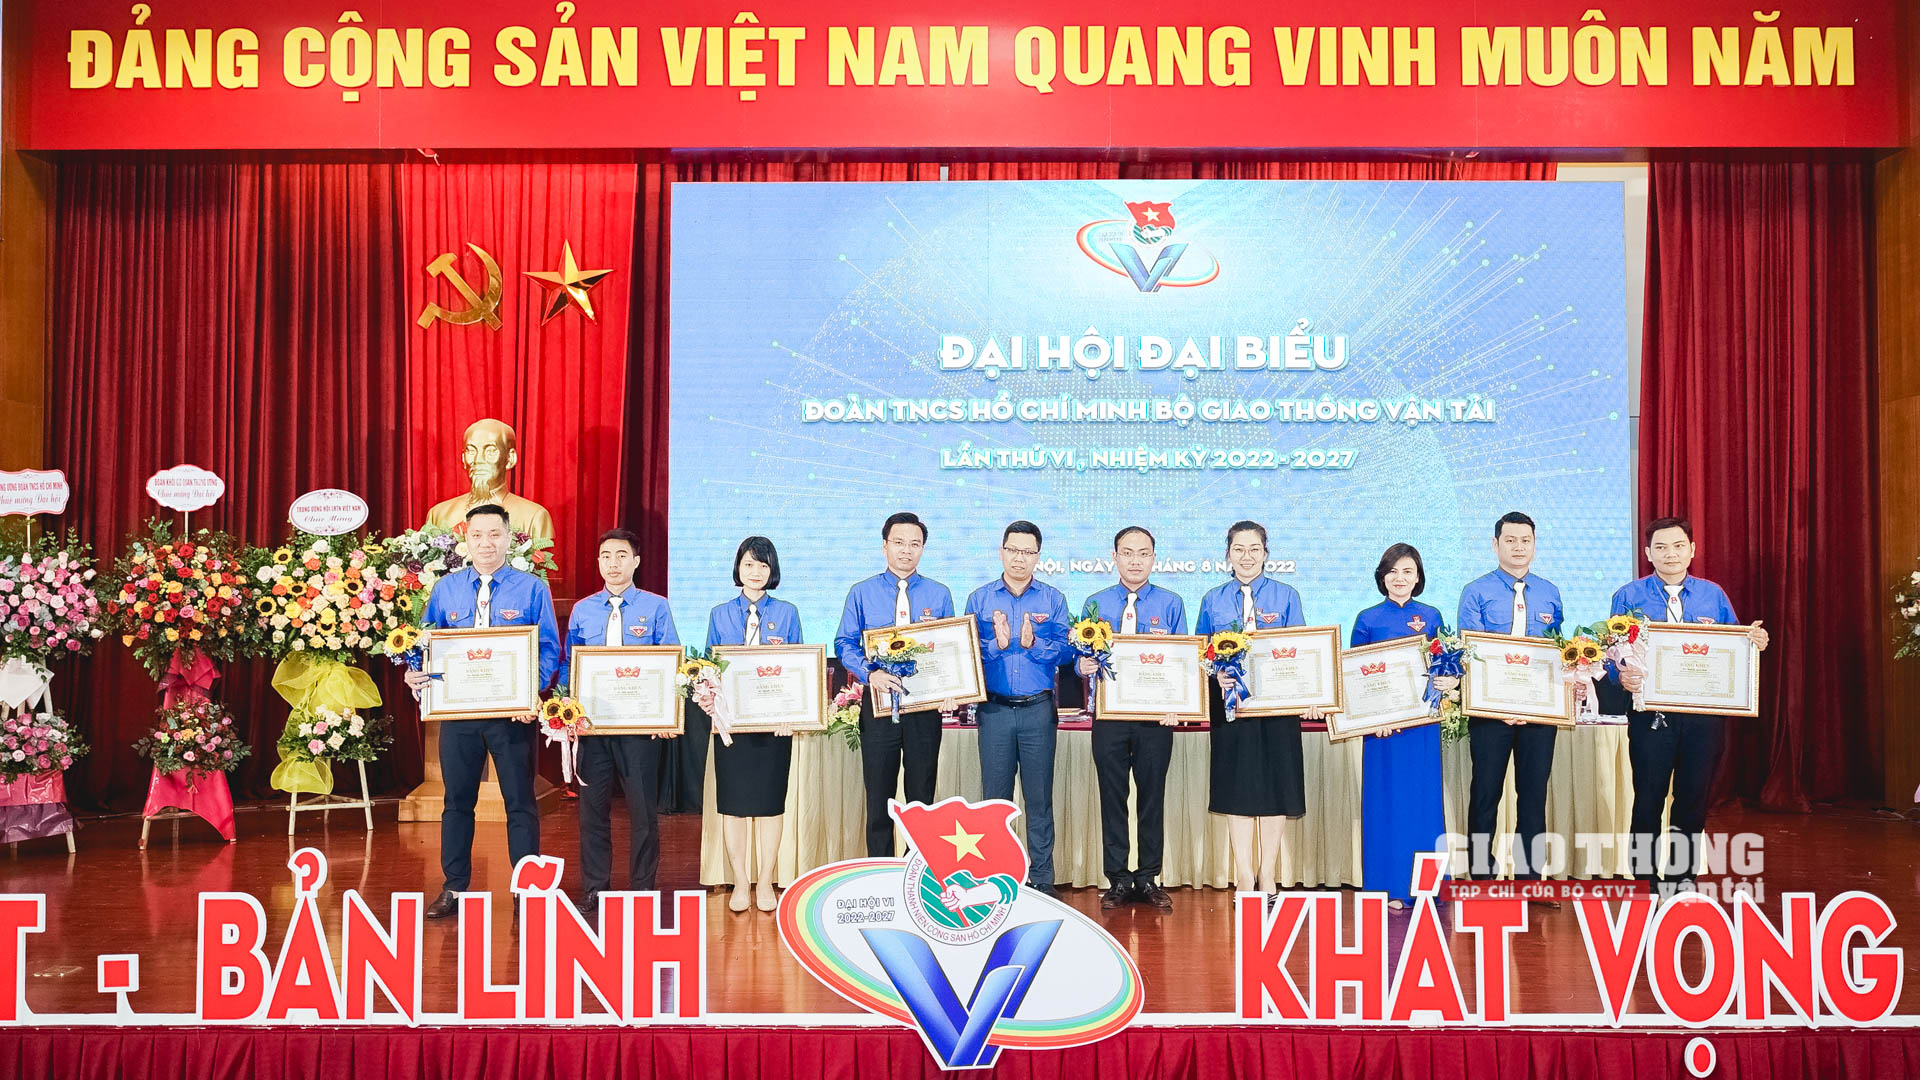 Đồng chí Nguyễn Ngọc Điệp trao bằng khen của Ban chấp hành Đoàn Khối các cơ quan Trung ương cho 9 cá nhân có thành tích xuất sắc trong triển khai Cuộc vận động thanh niên với văn hóa giao thông, giai đoạn 2017-2022 